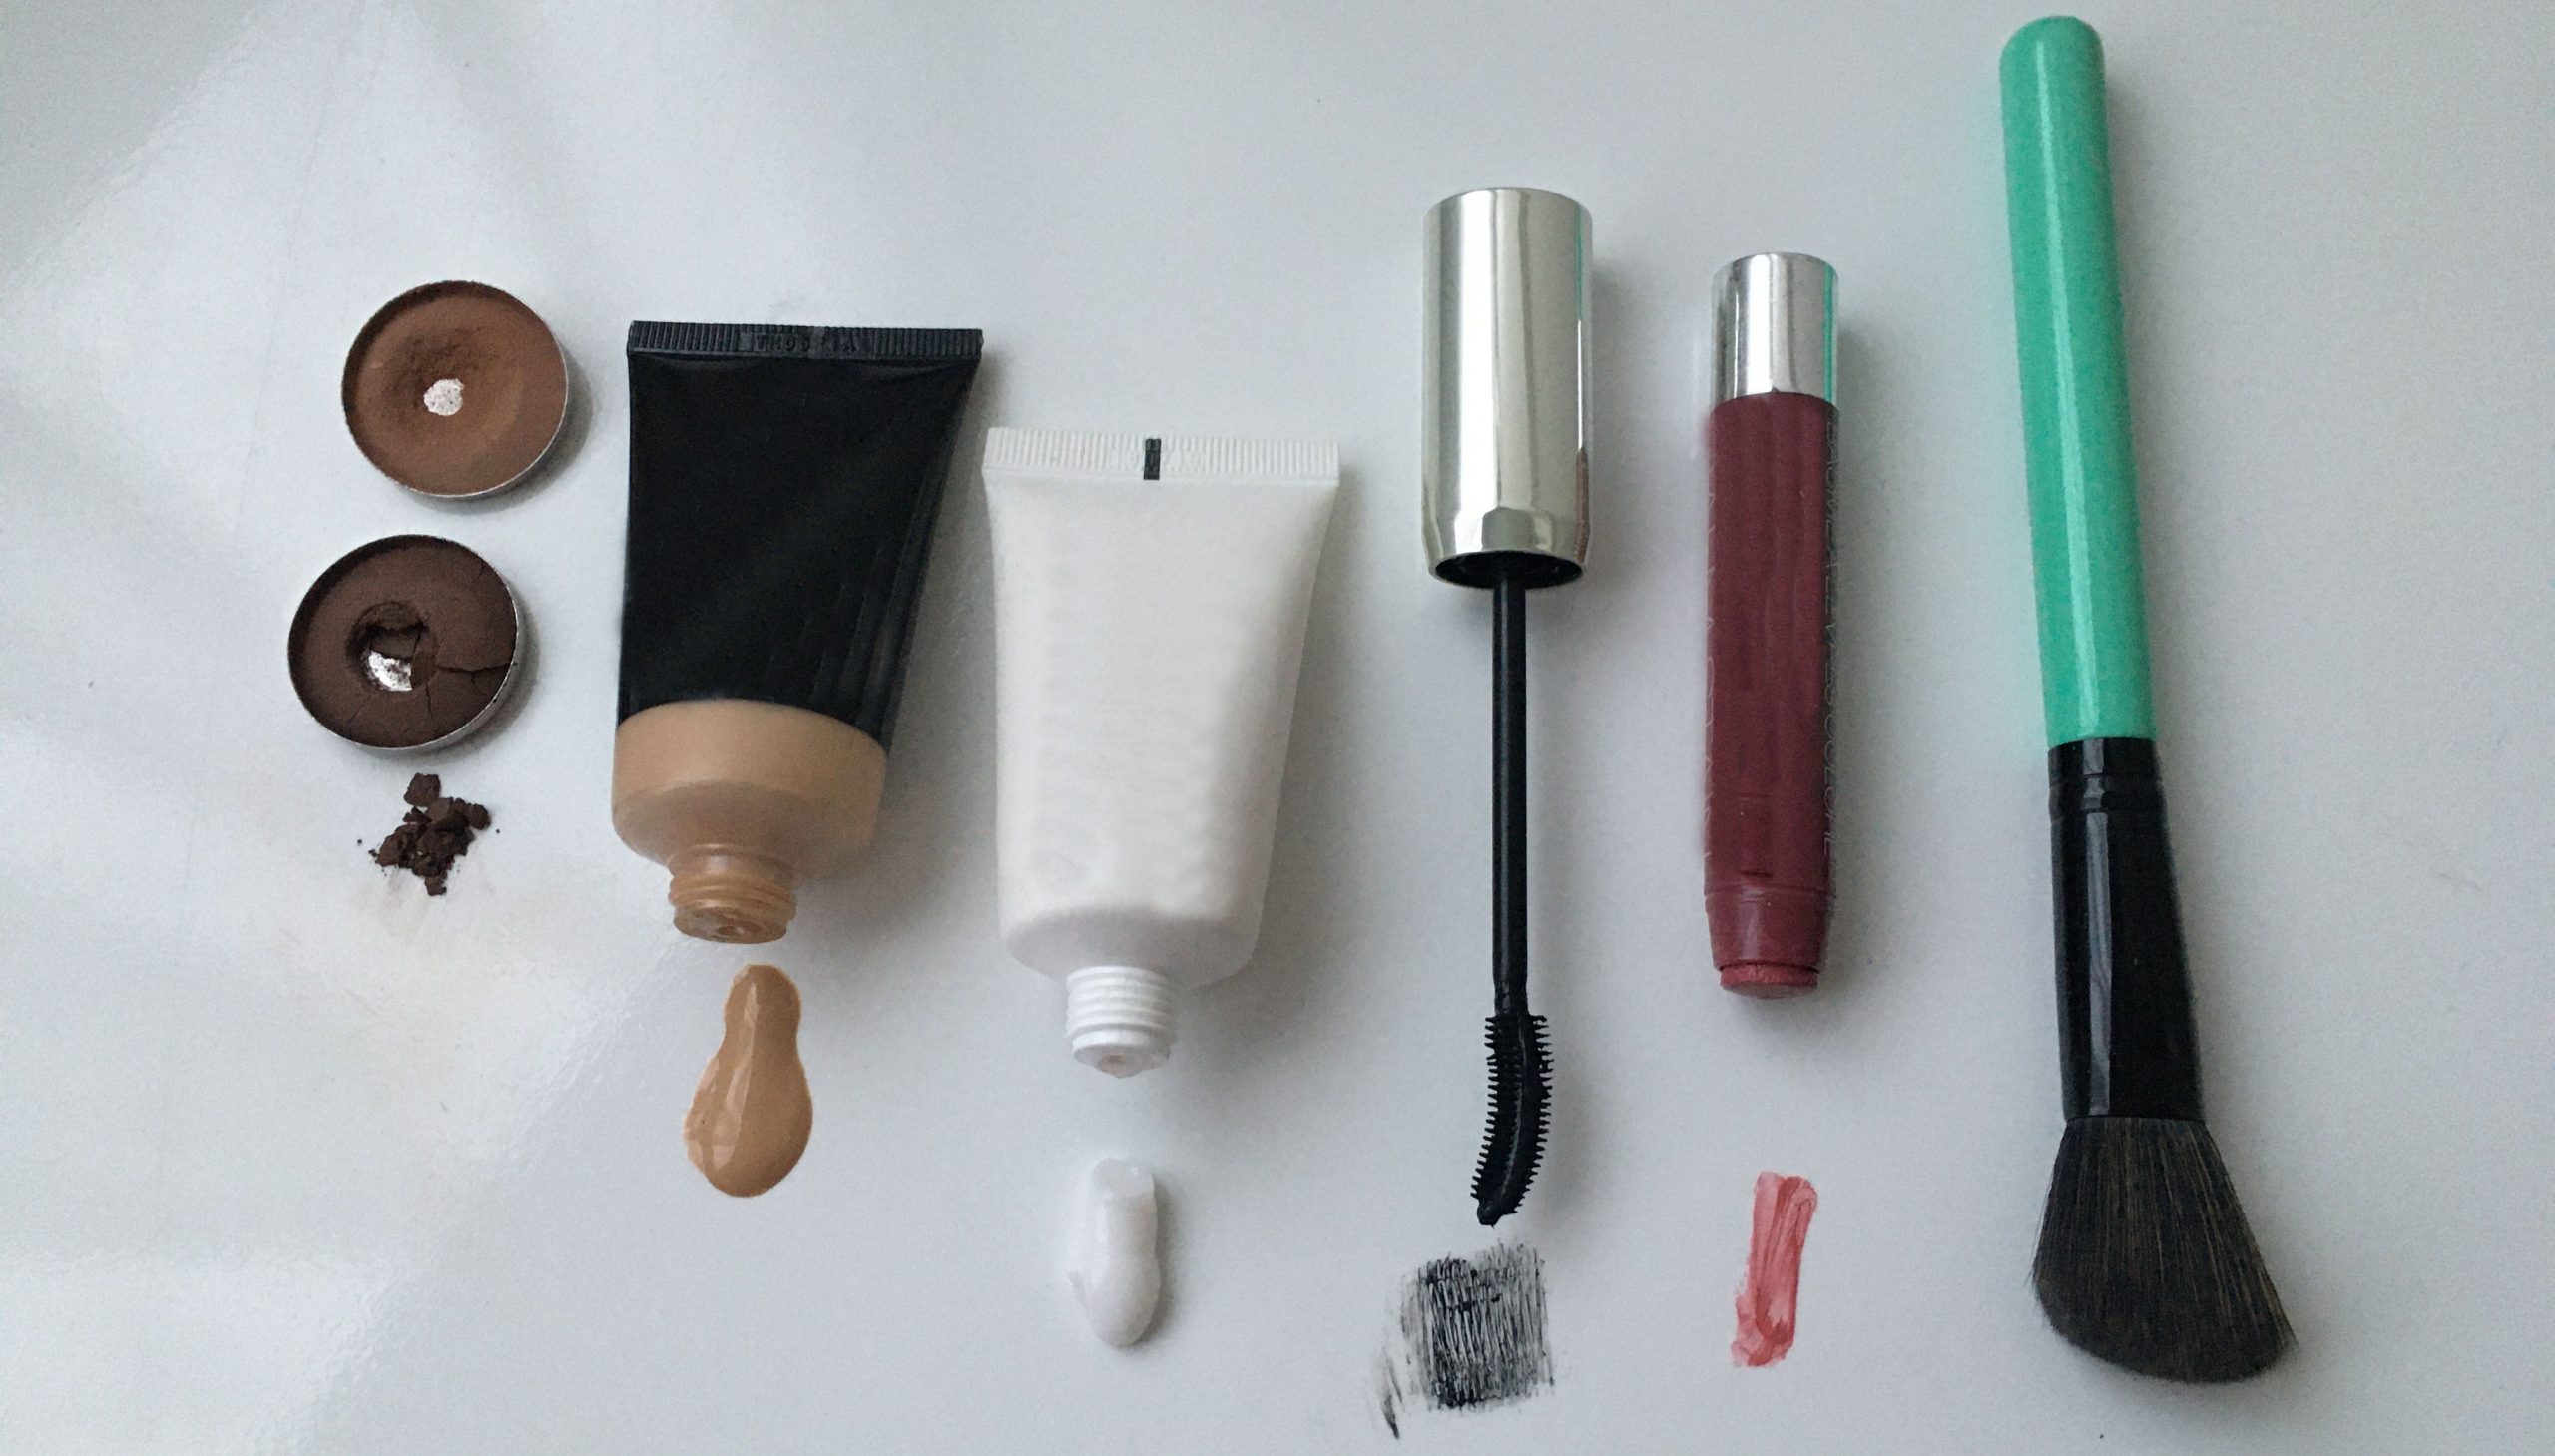 Es importante tener información sobre los componentes del maquillaje, explican desde Artcycle. Foto: Ilustración.